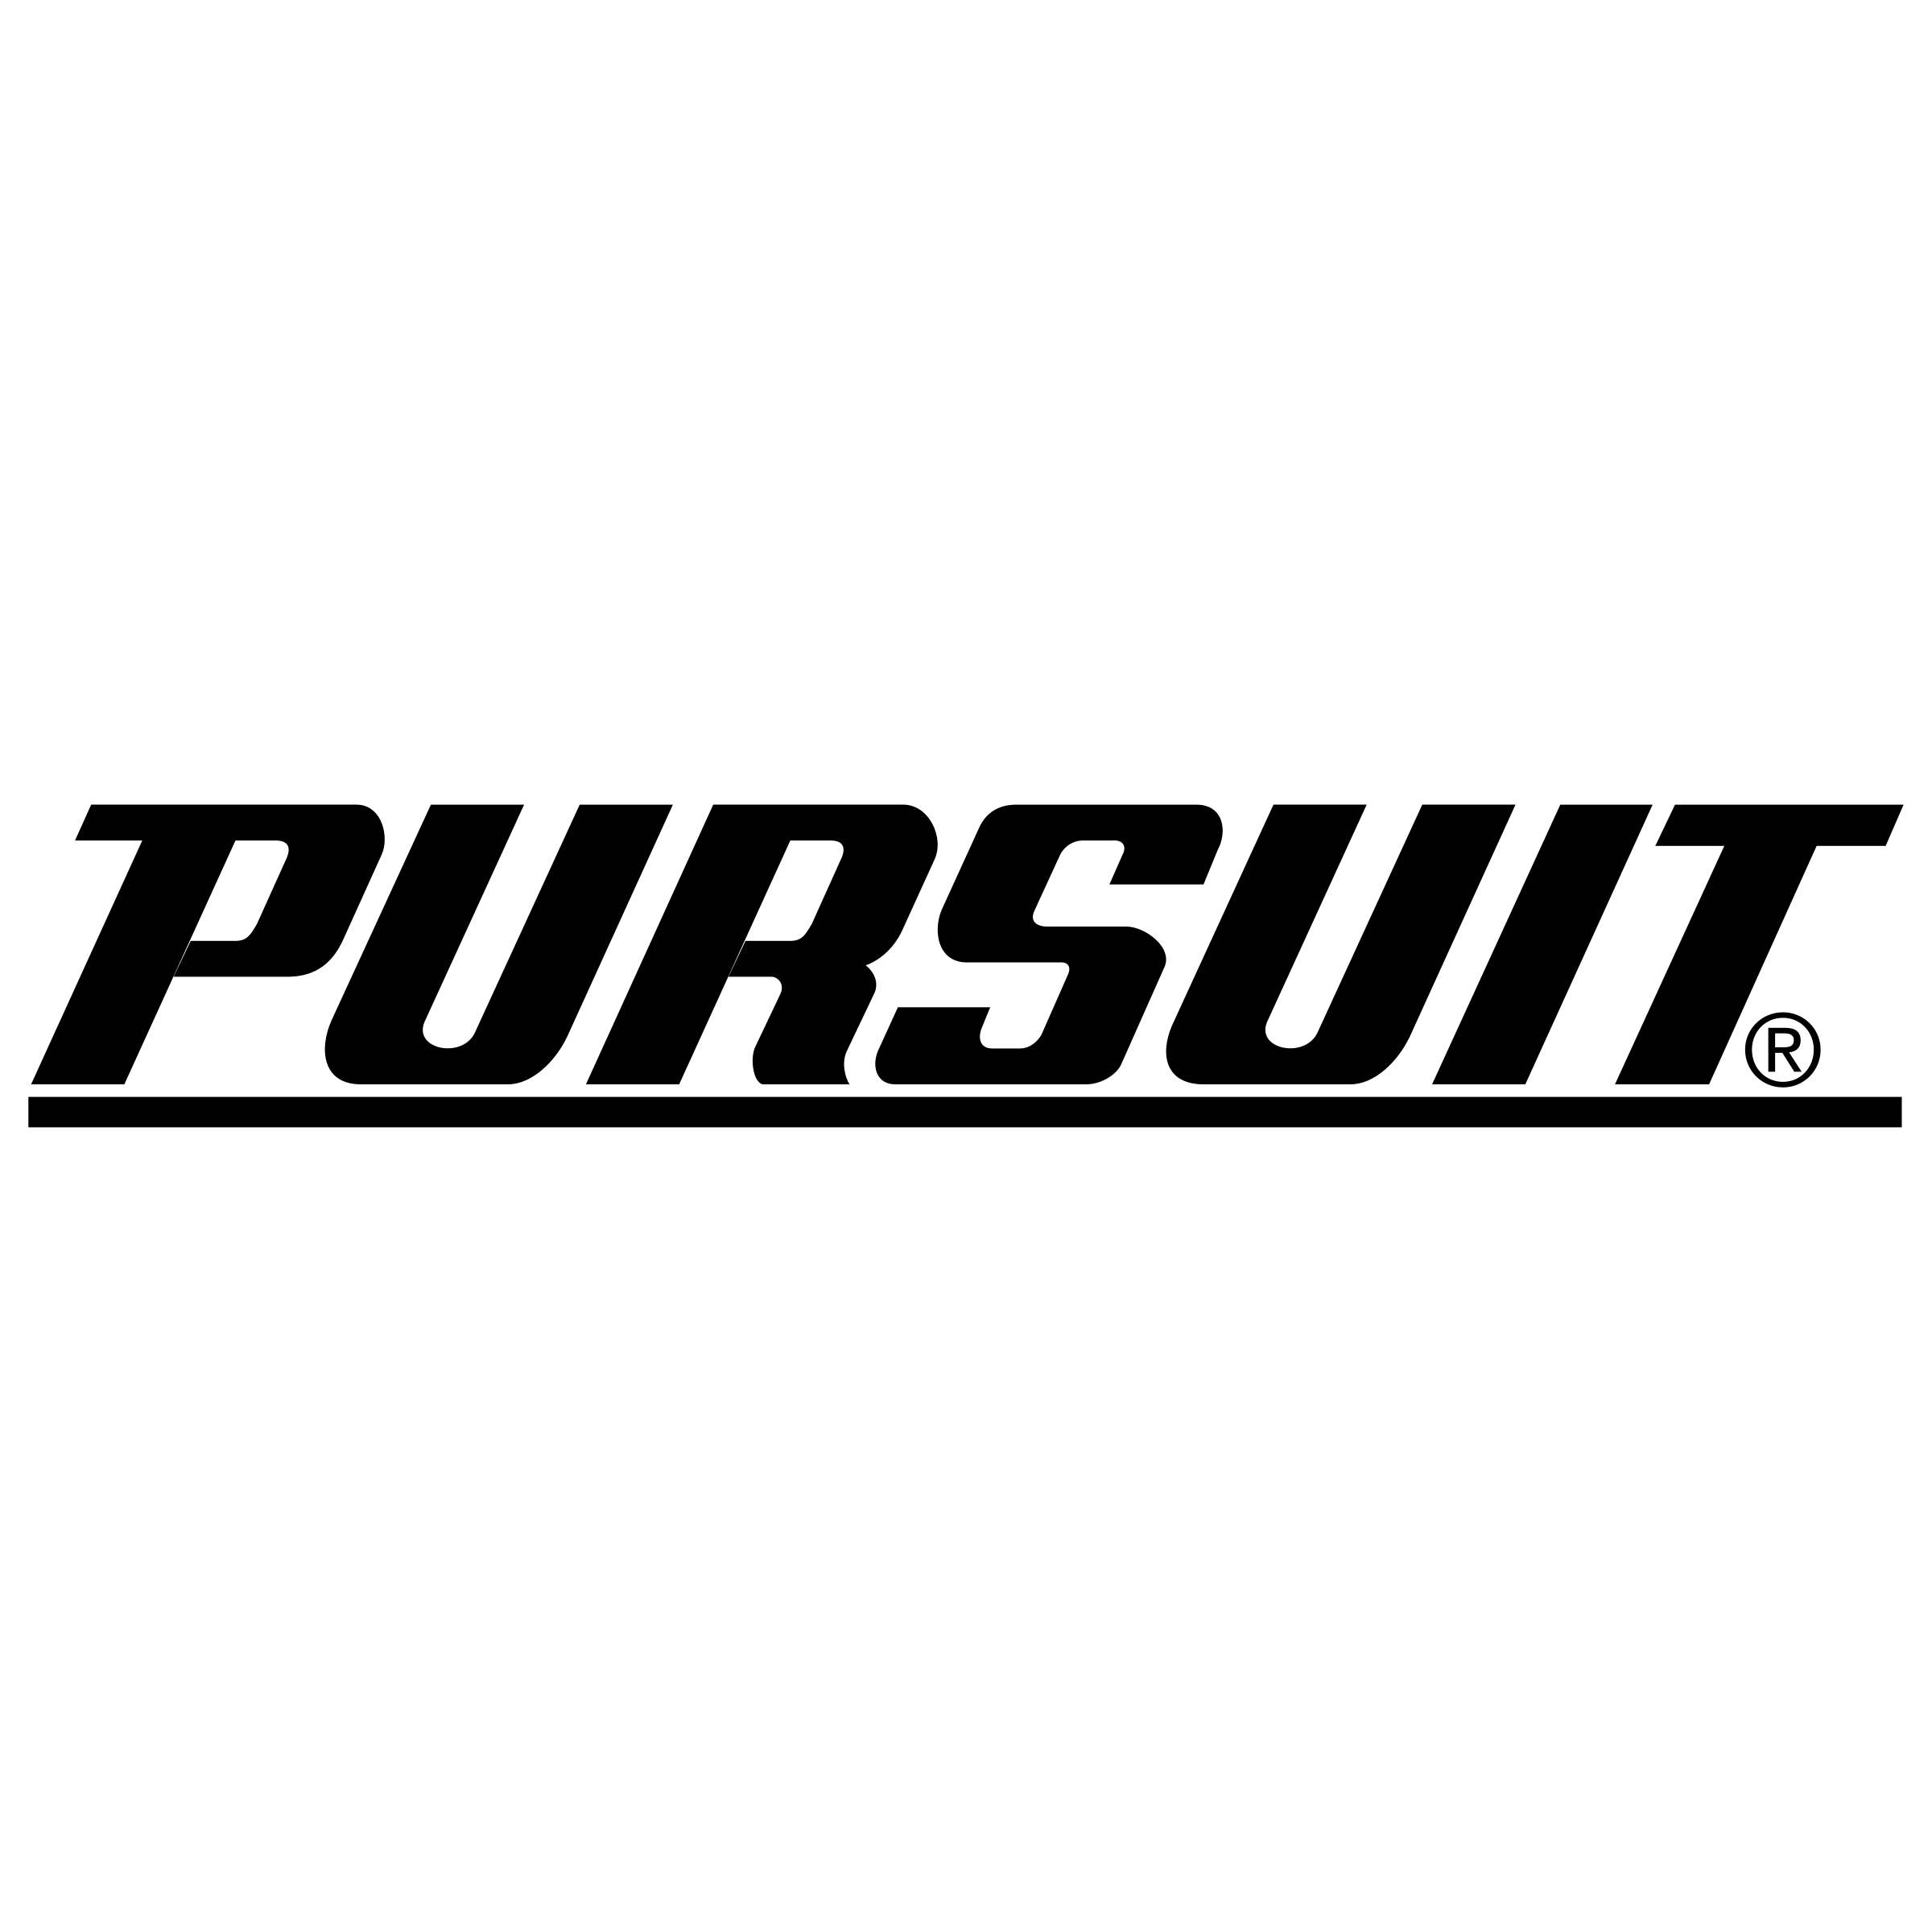 Pursuit Logo - Pursuit Logo PNG Transparent & SVG Vector